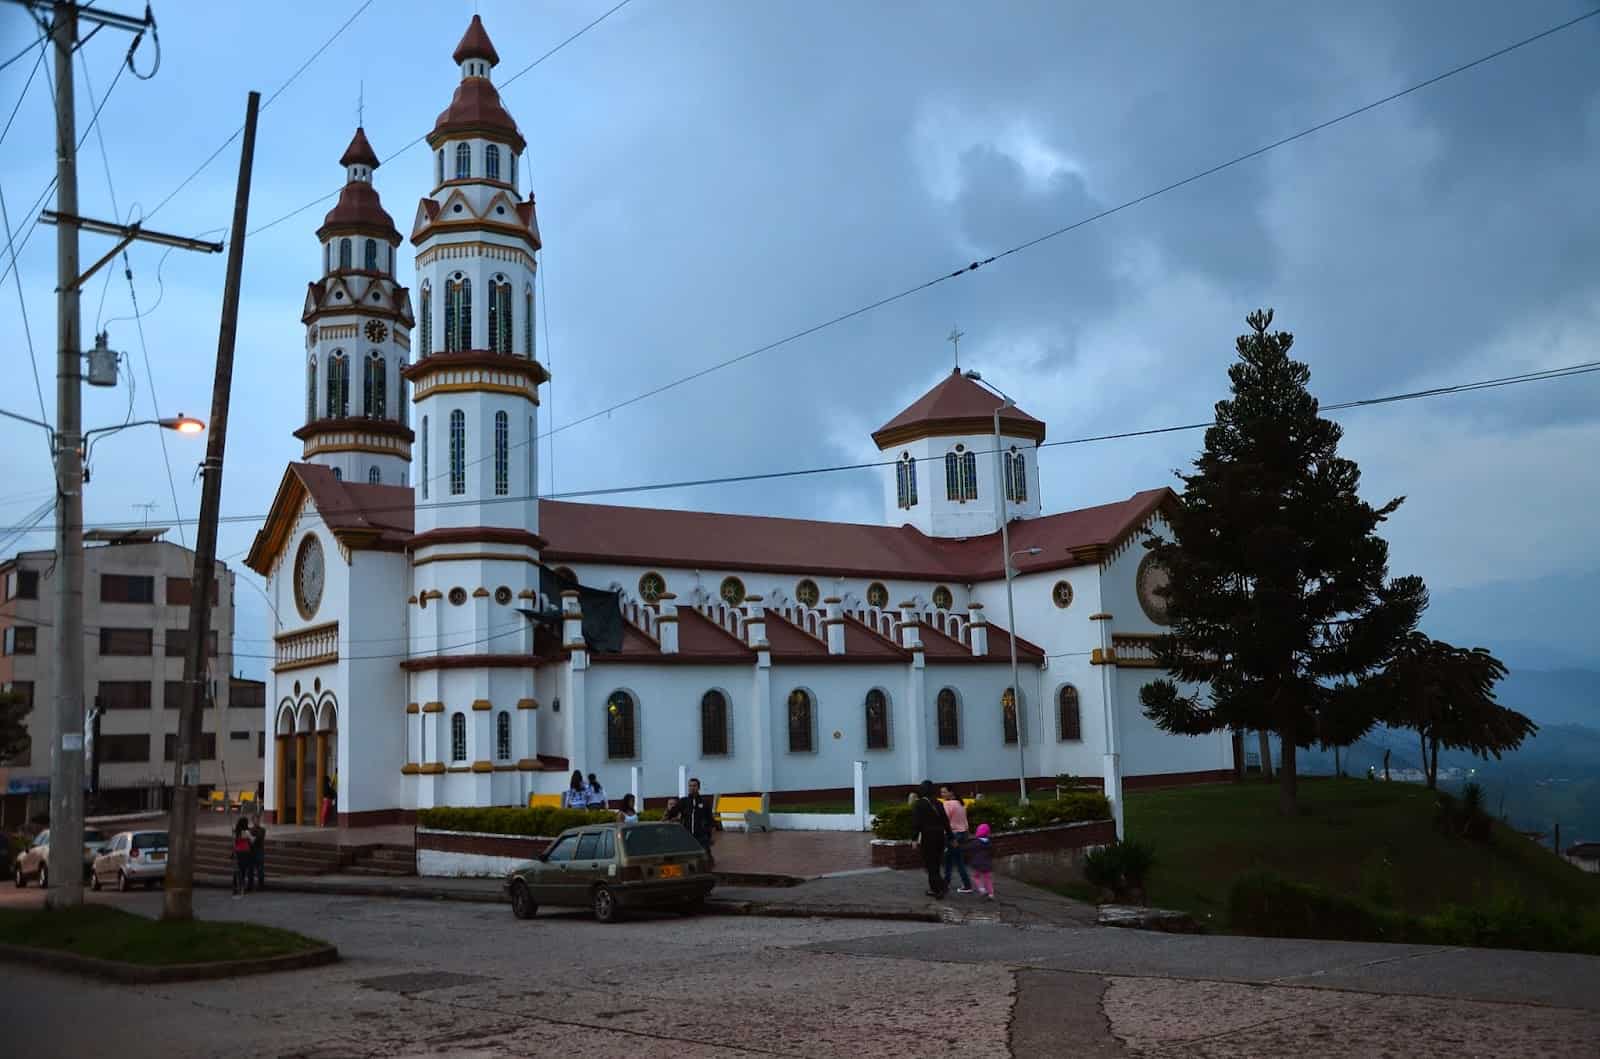 Nuestra Señora del Rosario in Manizales, Caldas, Colombia